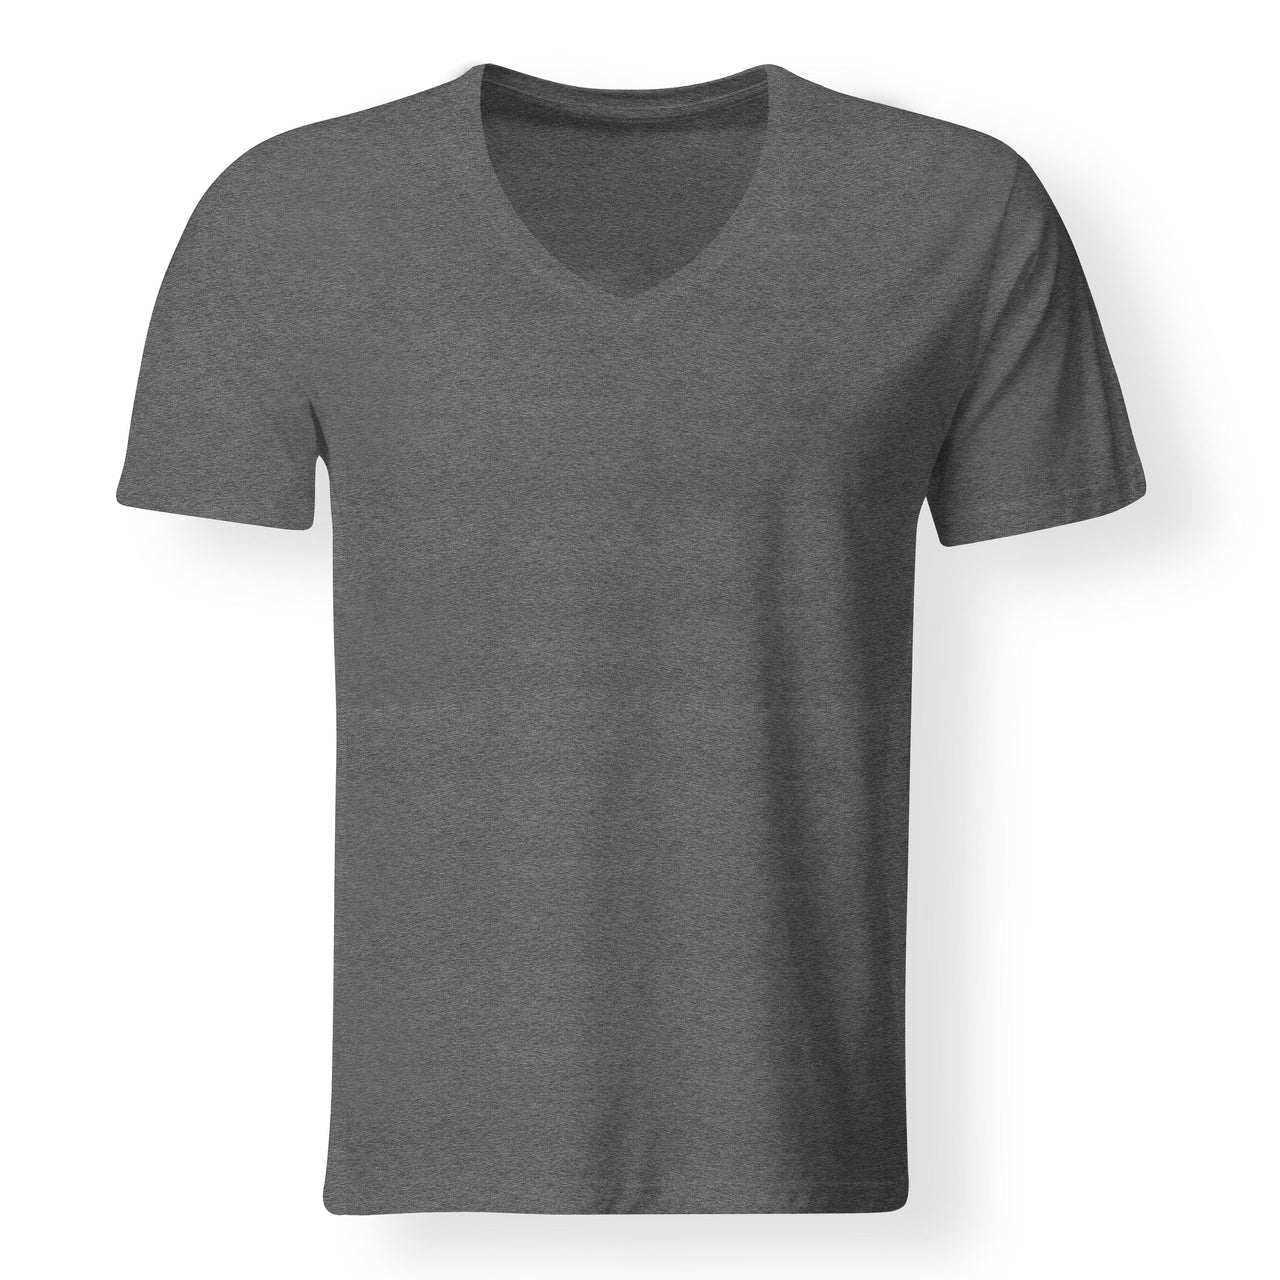 NO Design Super Quality V-Neck T-Shirts